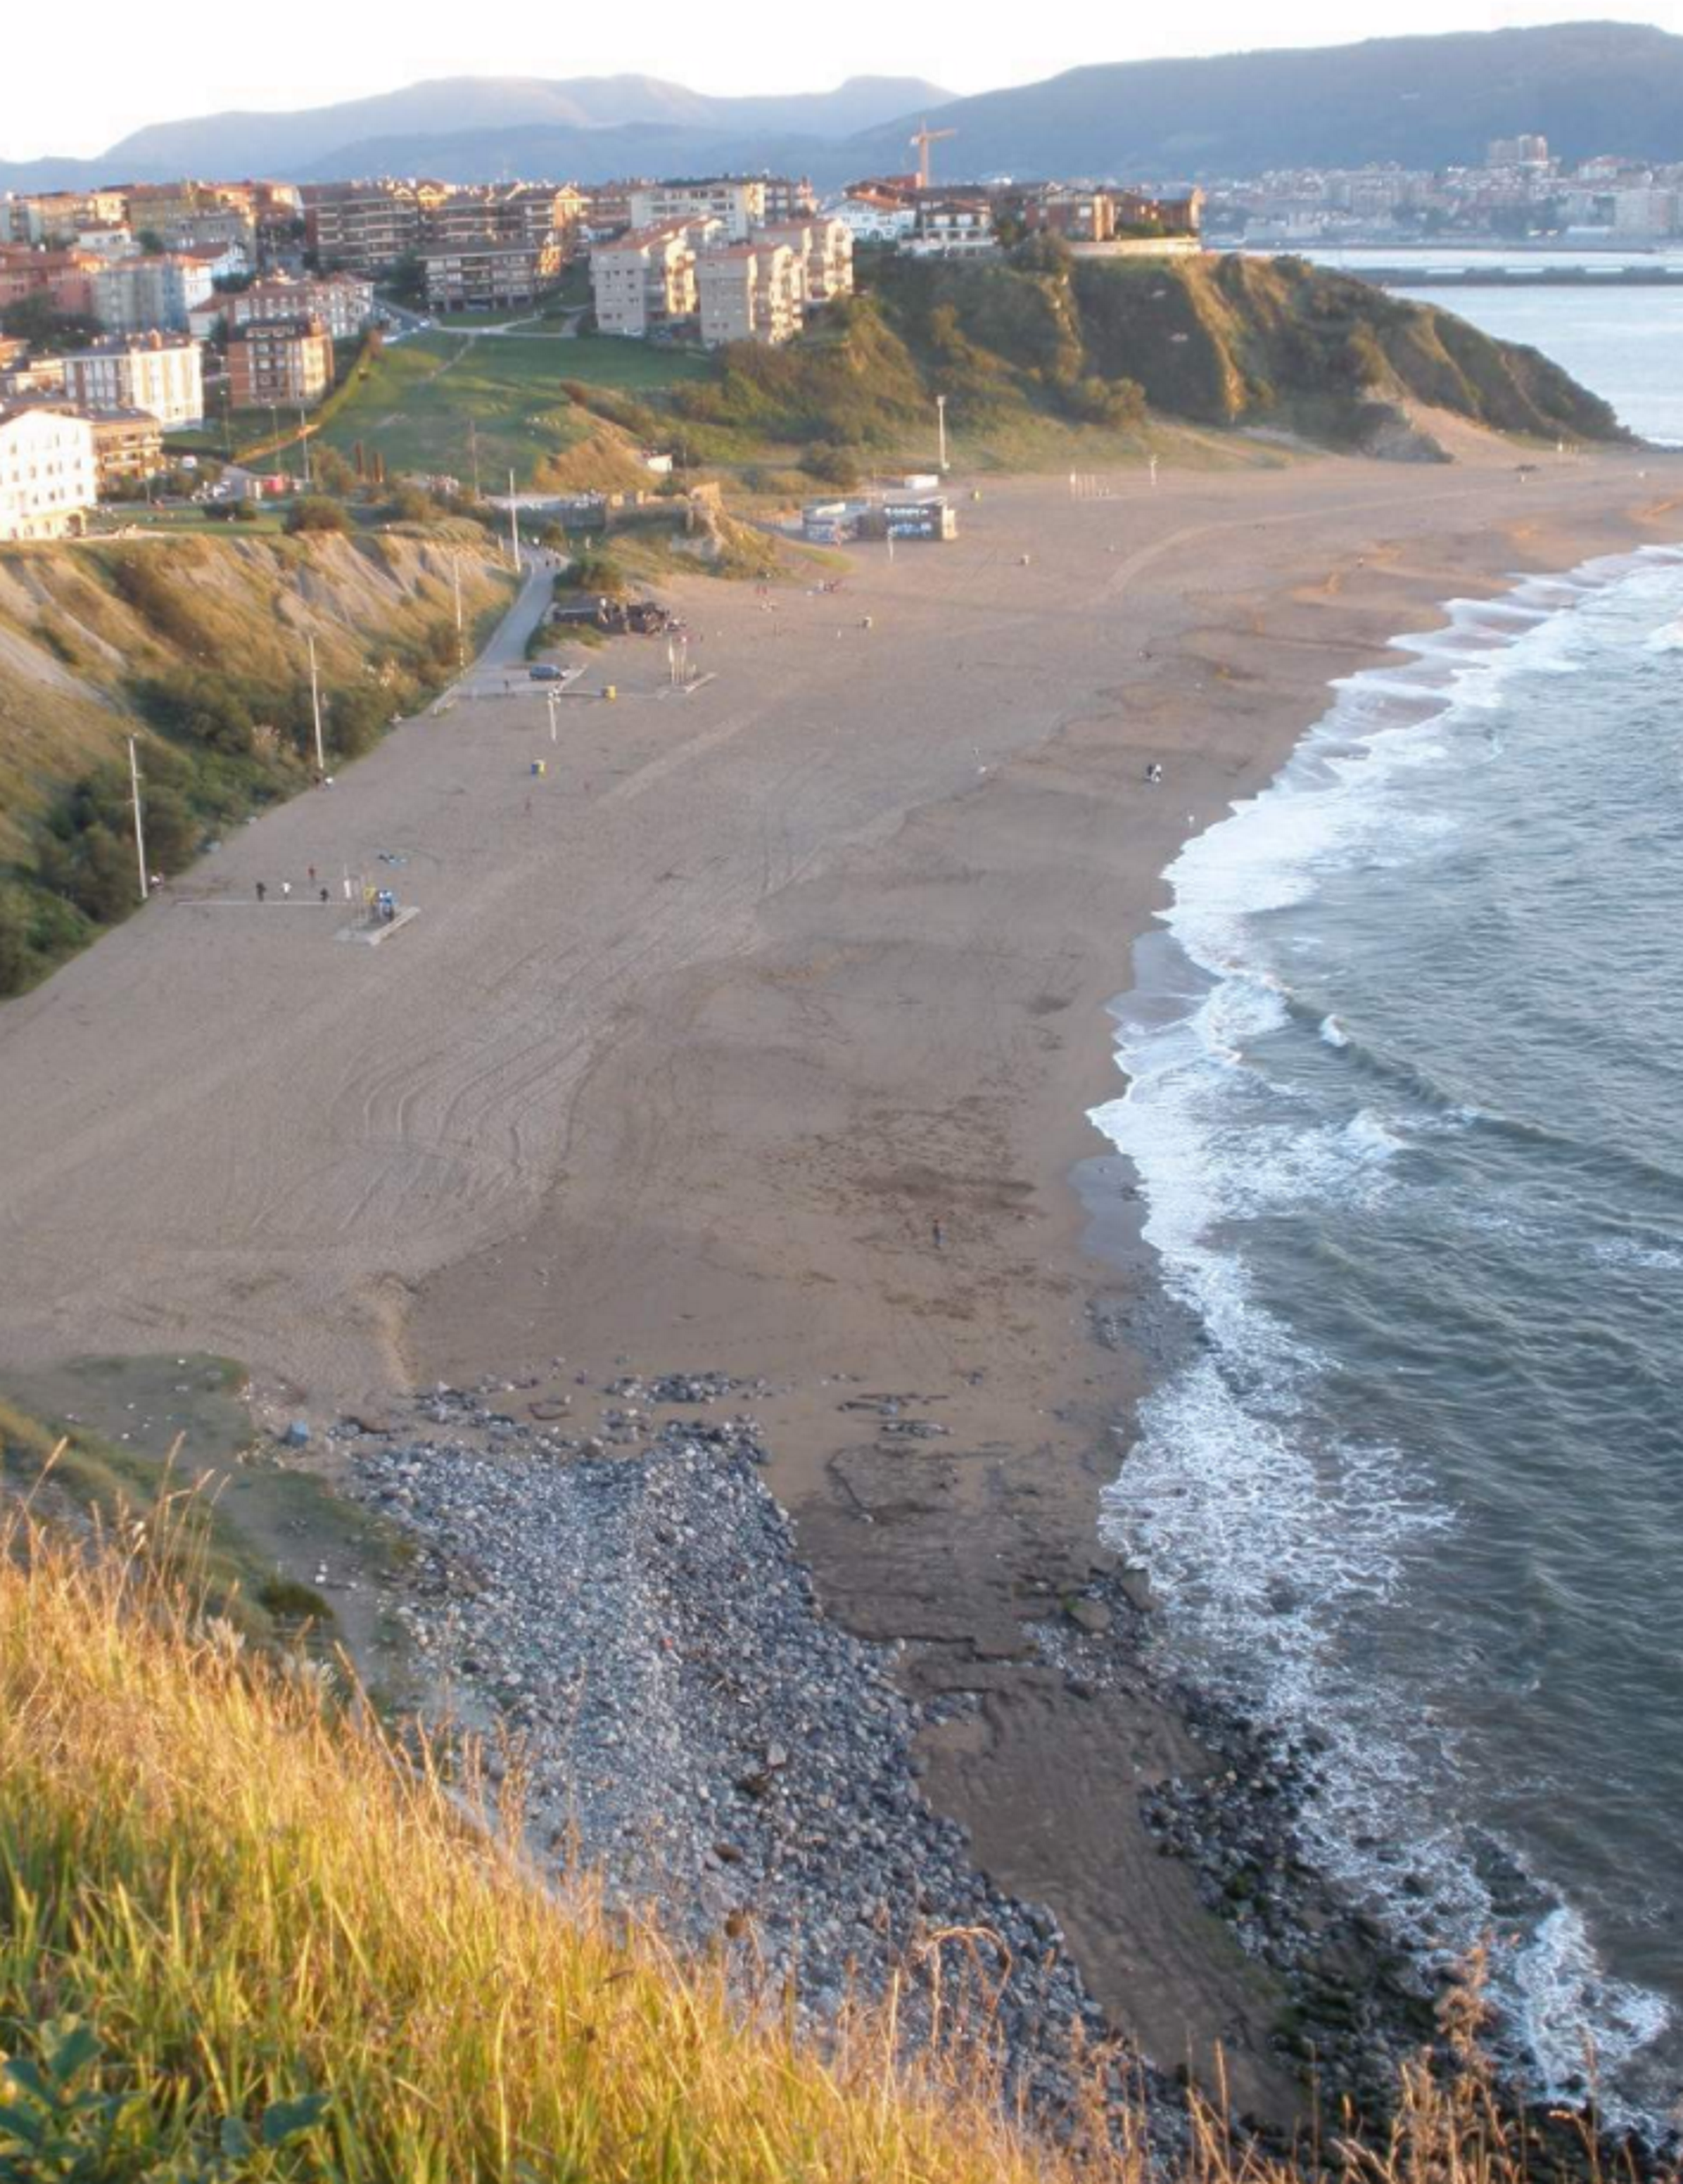 Colen el 'Cara el sol' per megafonia a una platja basca